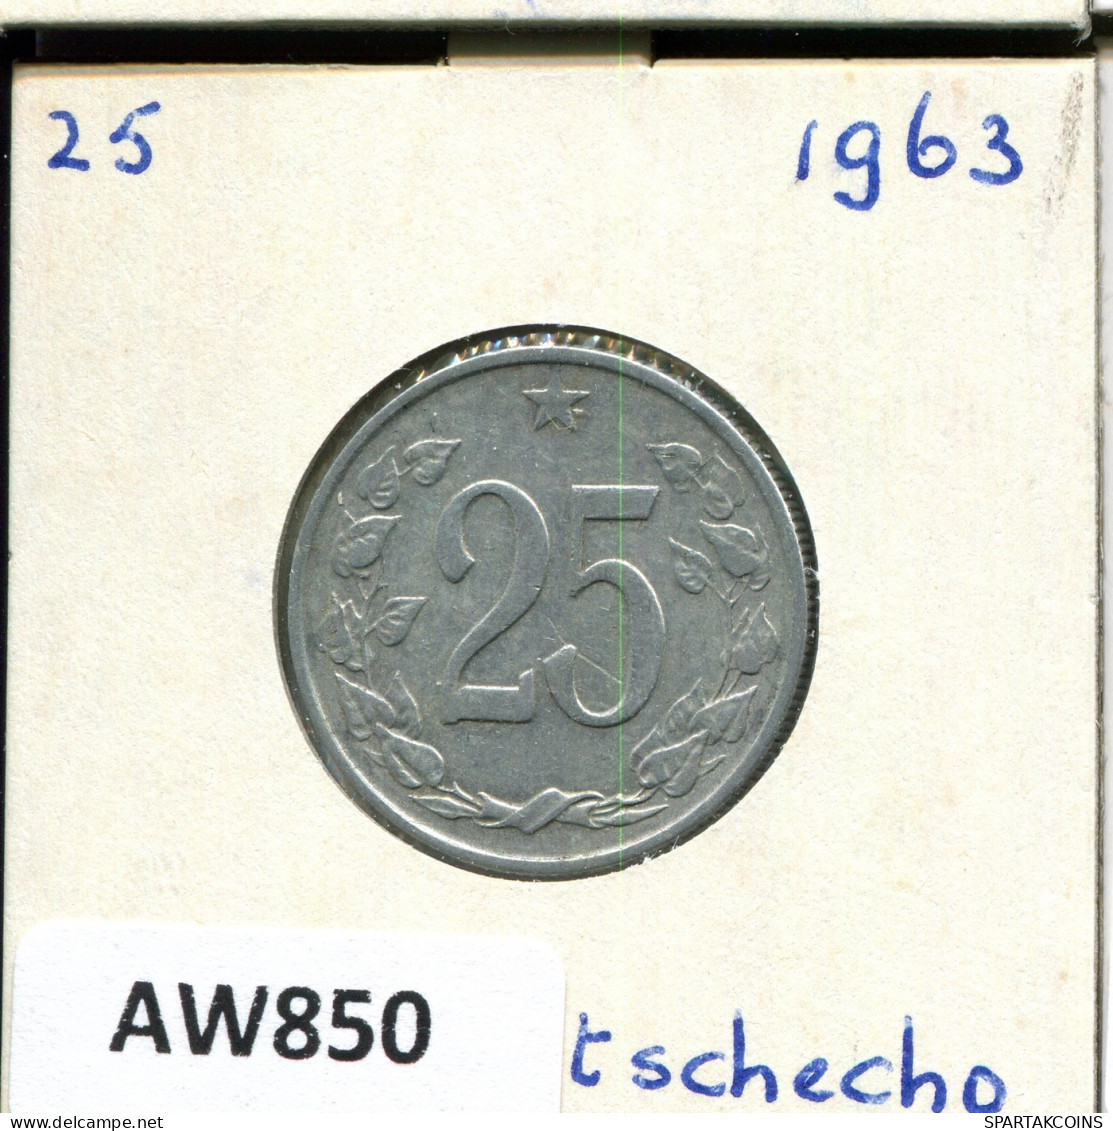 25 KORUN 1963 CZECHOSLOVAKIA Coin #AW850.U.A - Tchécoslovaquie